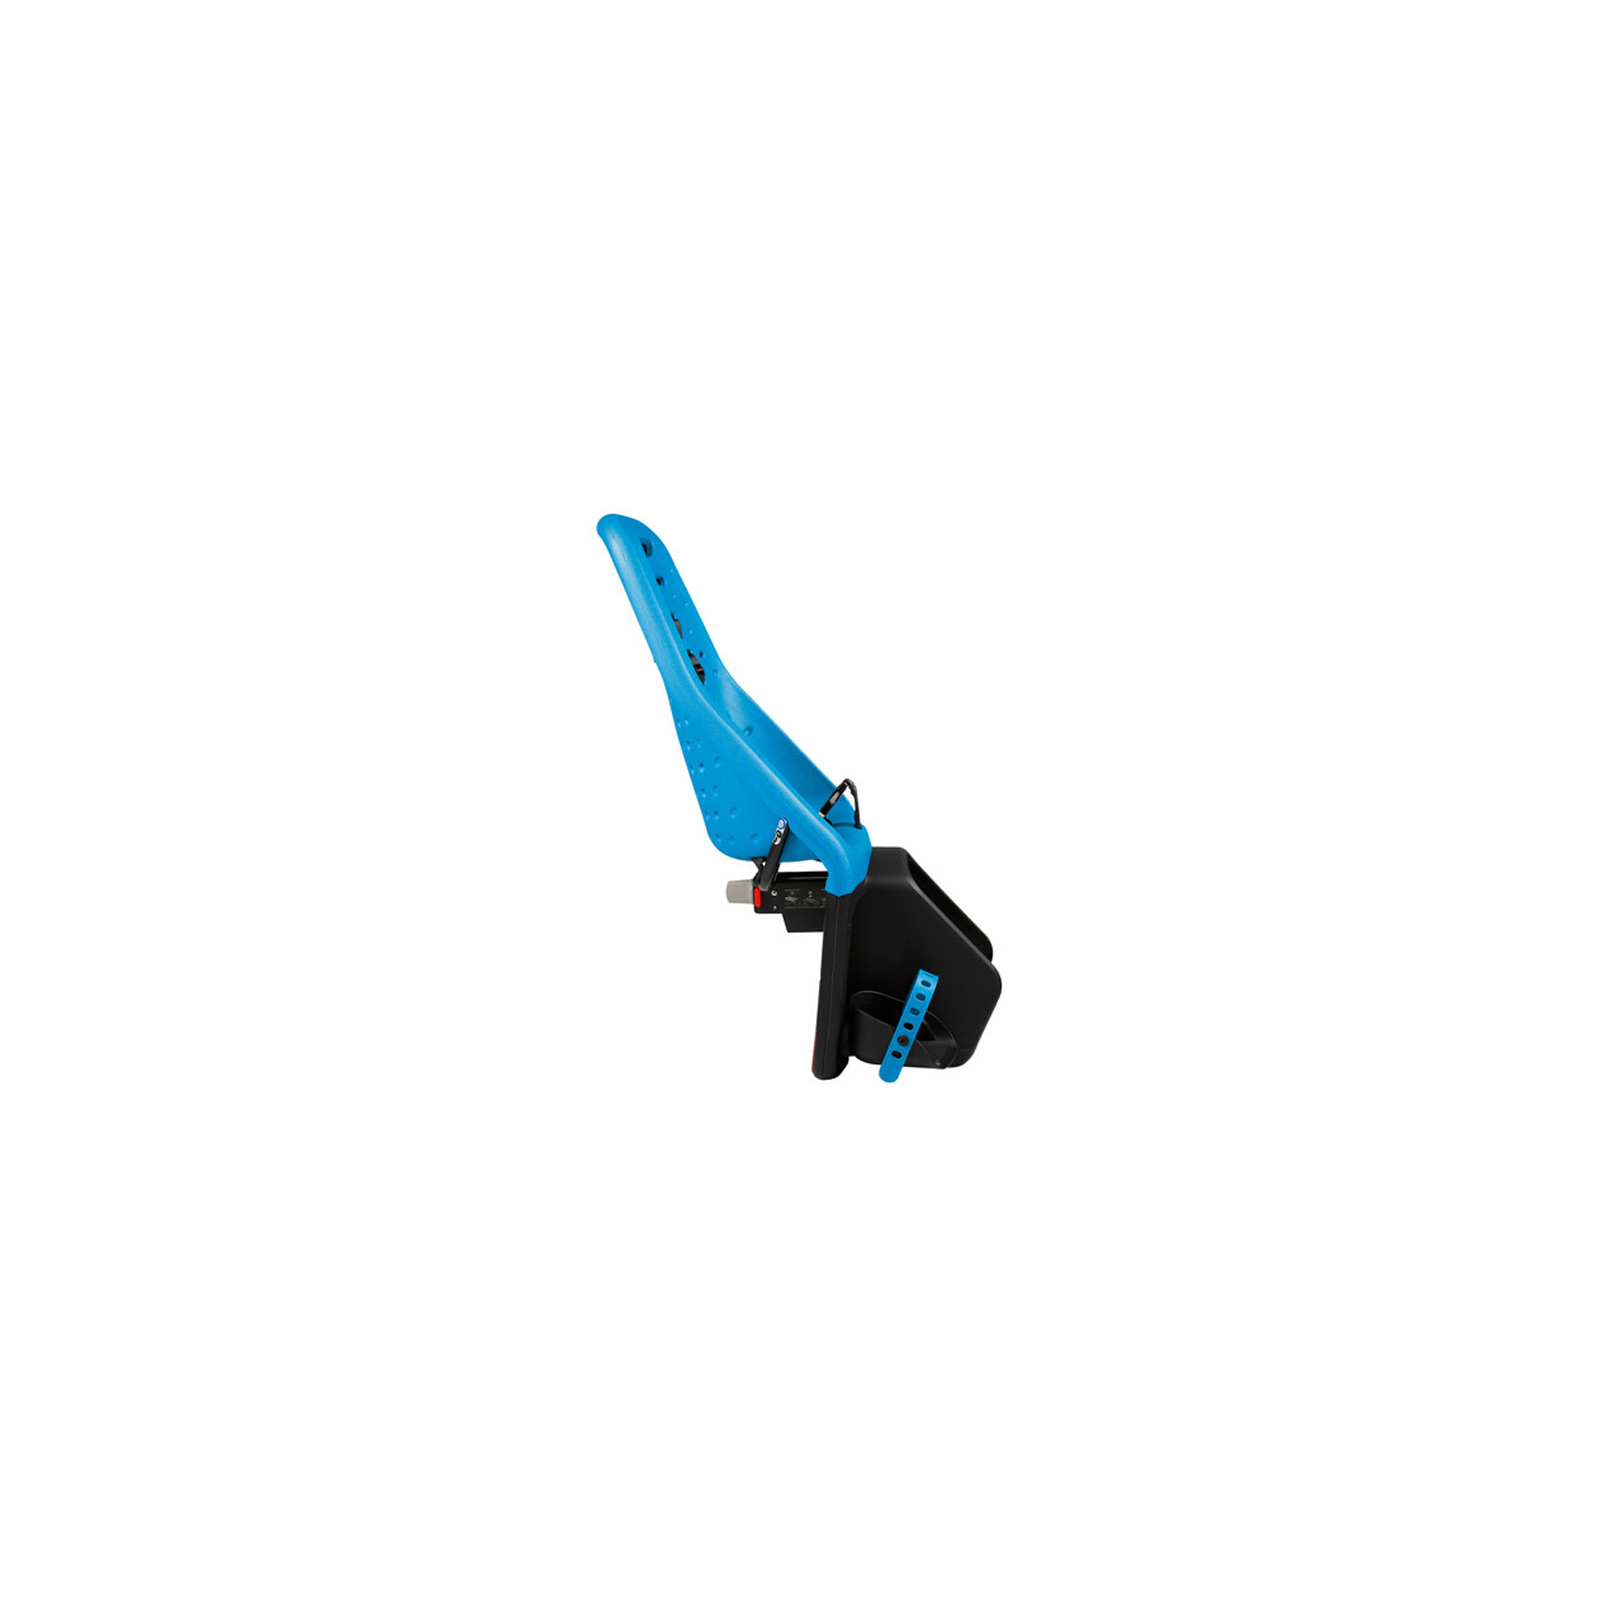 Детское велокресло Thule Yepp Maxi Easy Fit (Blue) (TH12020212) изображение 2